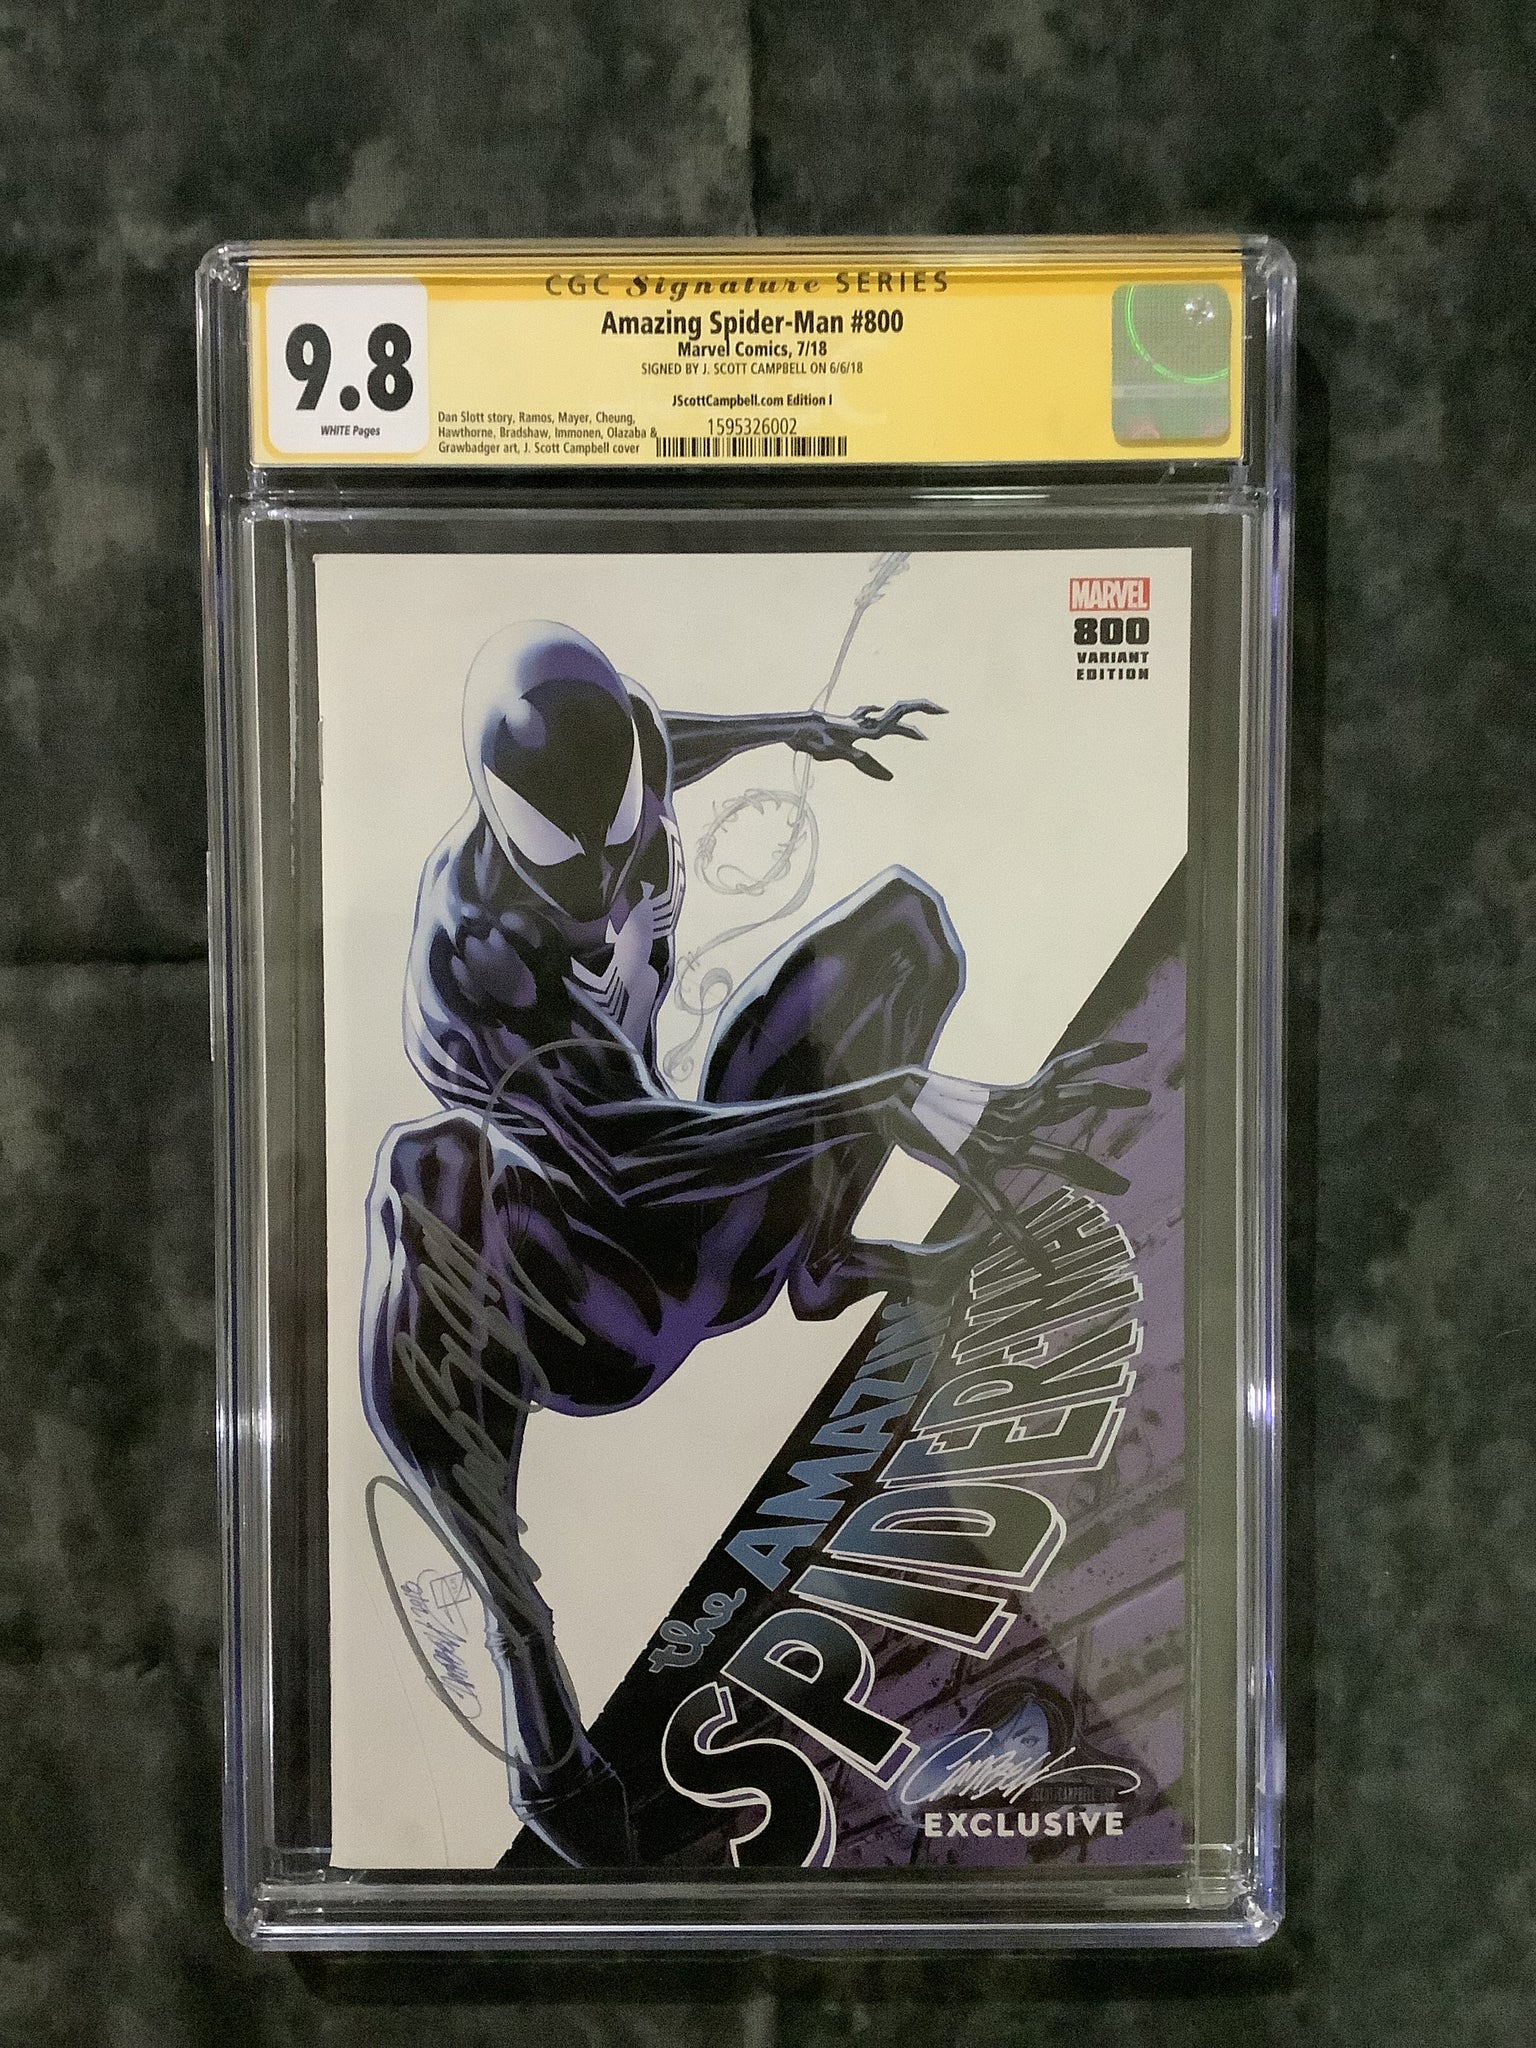 Signature Series Amazing Spider-Man #800 CGC 9.8 26002